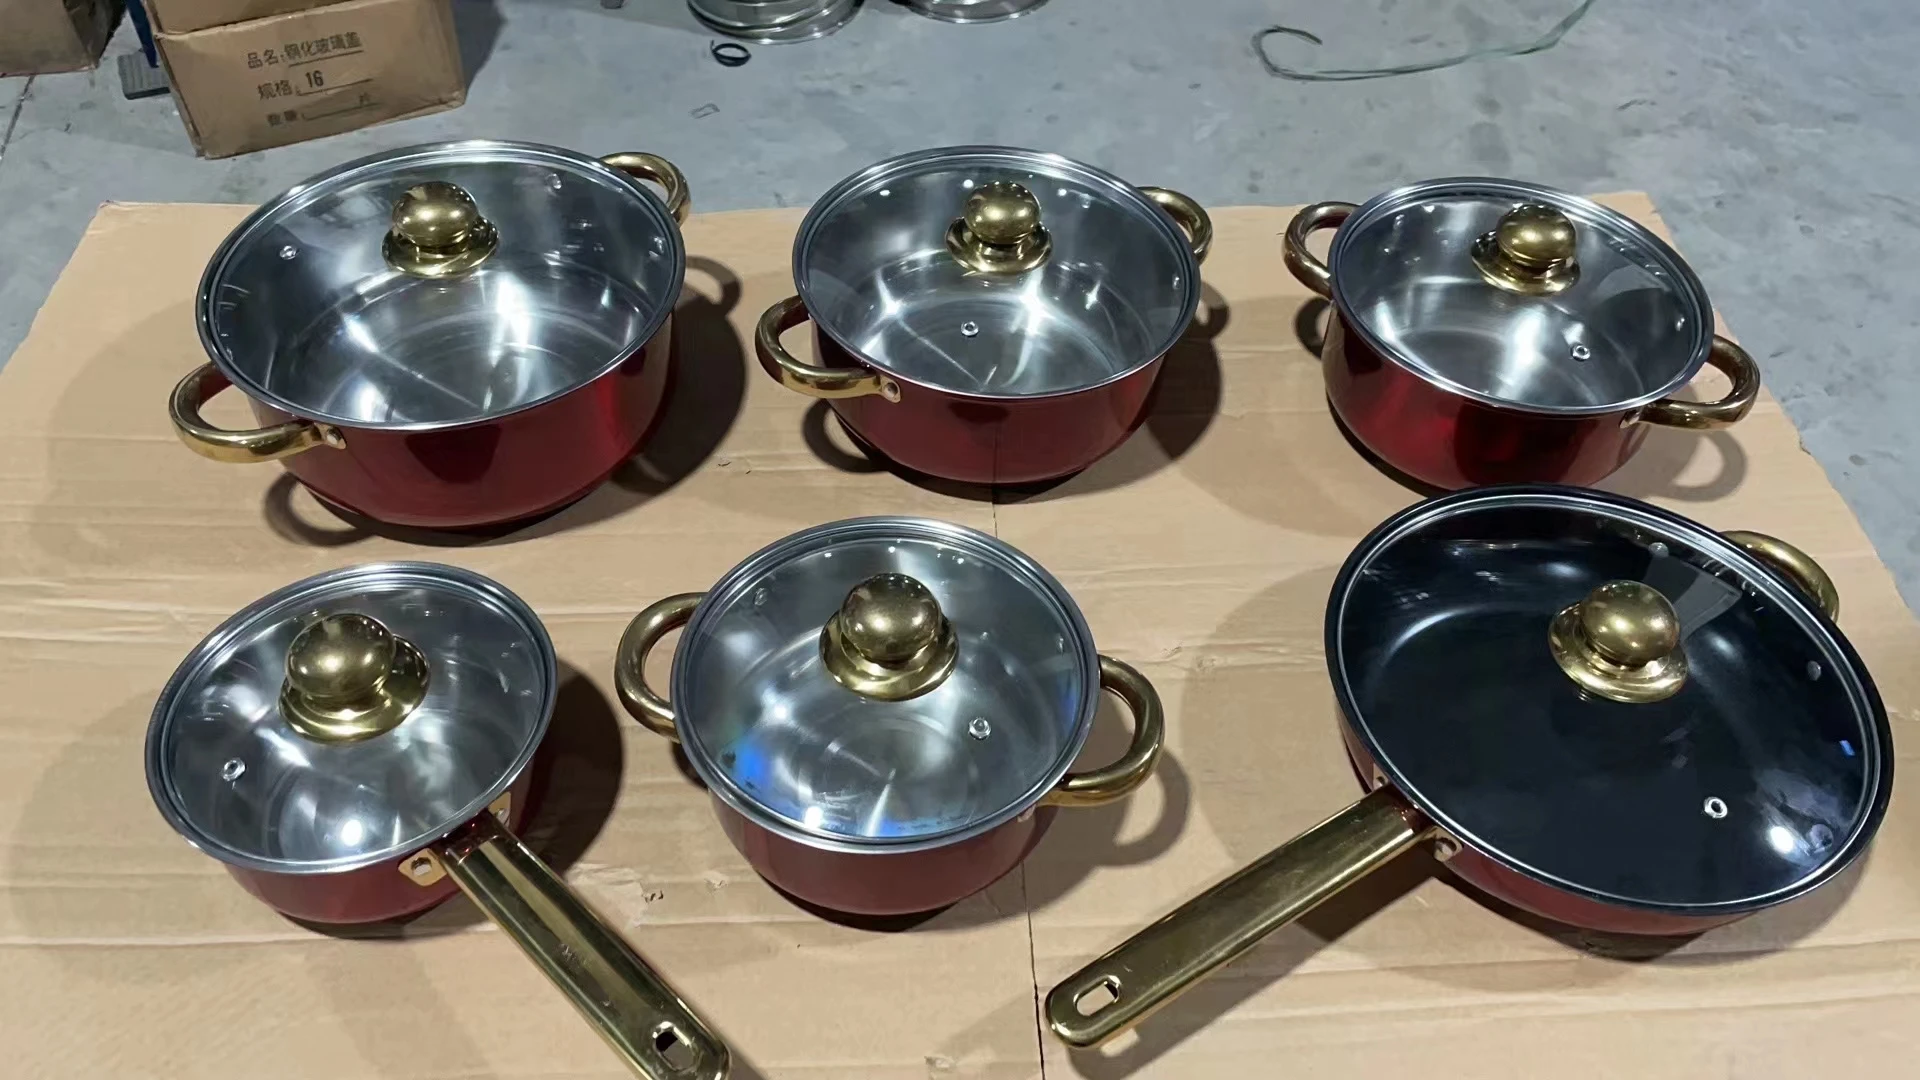 Factory Direct Panelas Cookware Set Cartoon Pot Set Casserole Deep Fry Pan kettle cookware sets